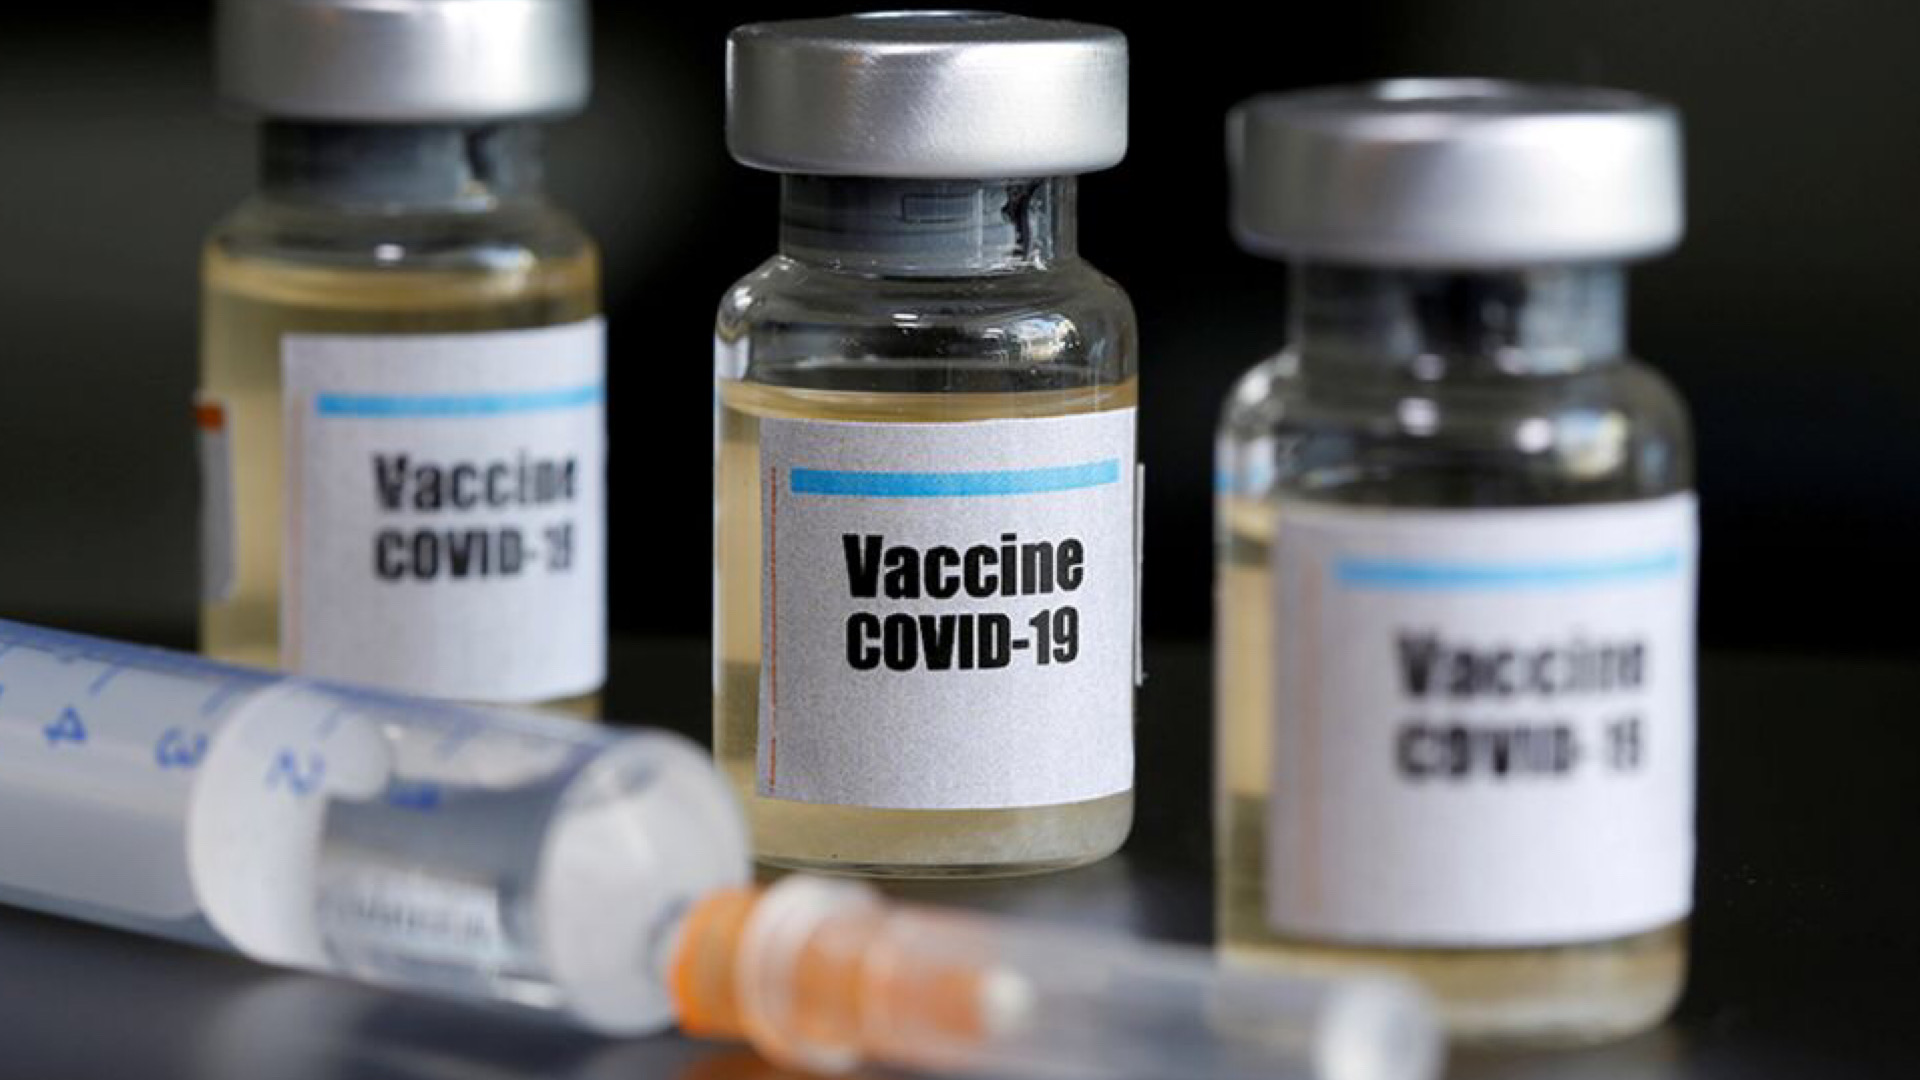 Vaccines safe, assures Prof Mulenga